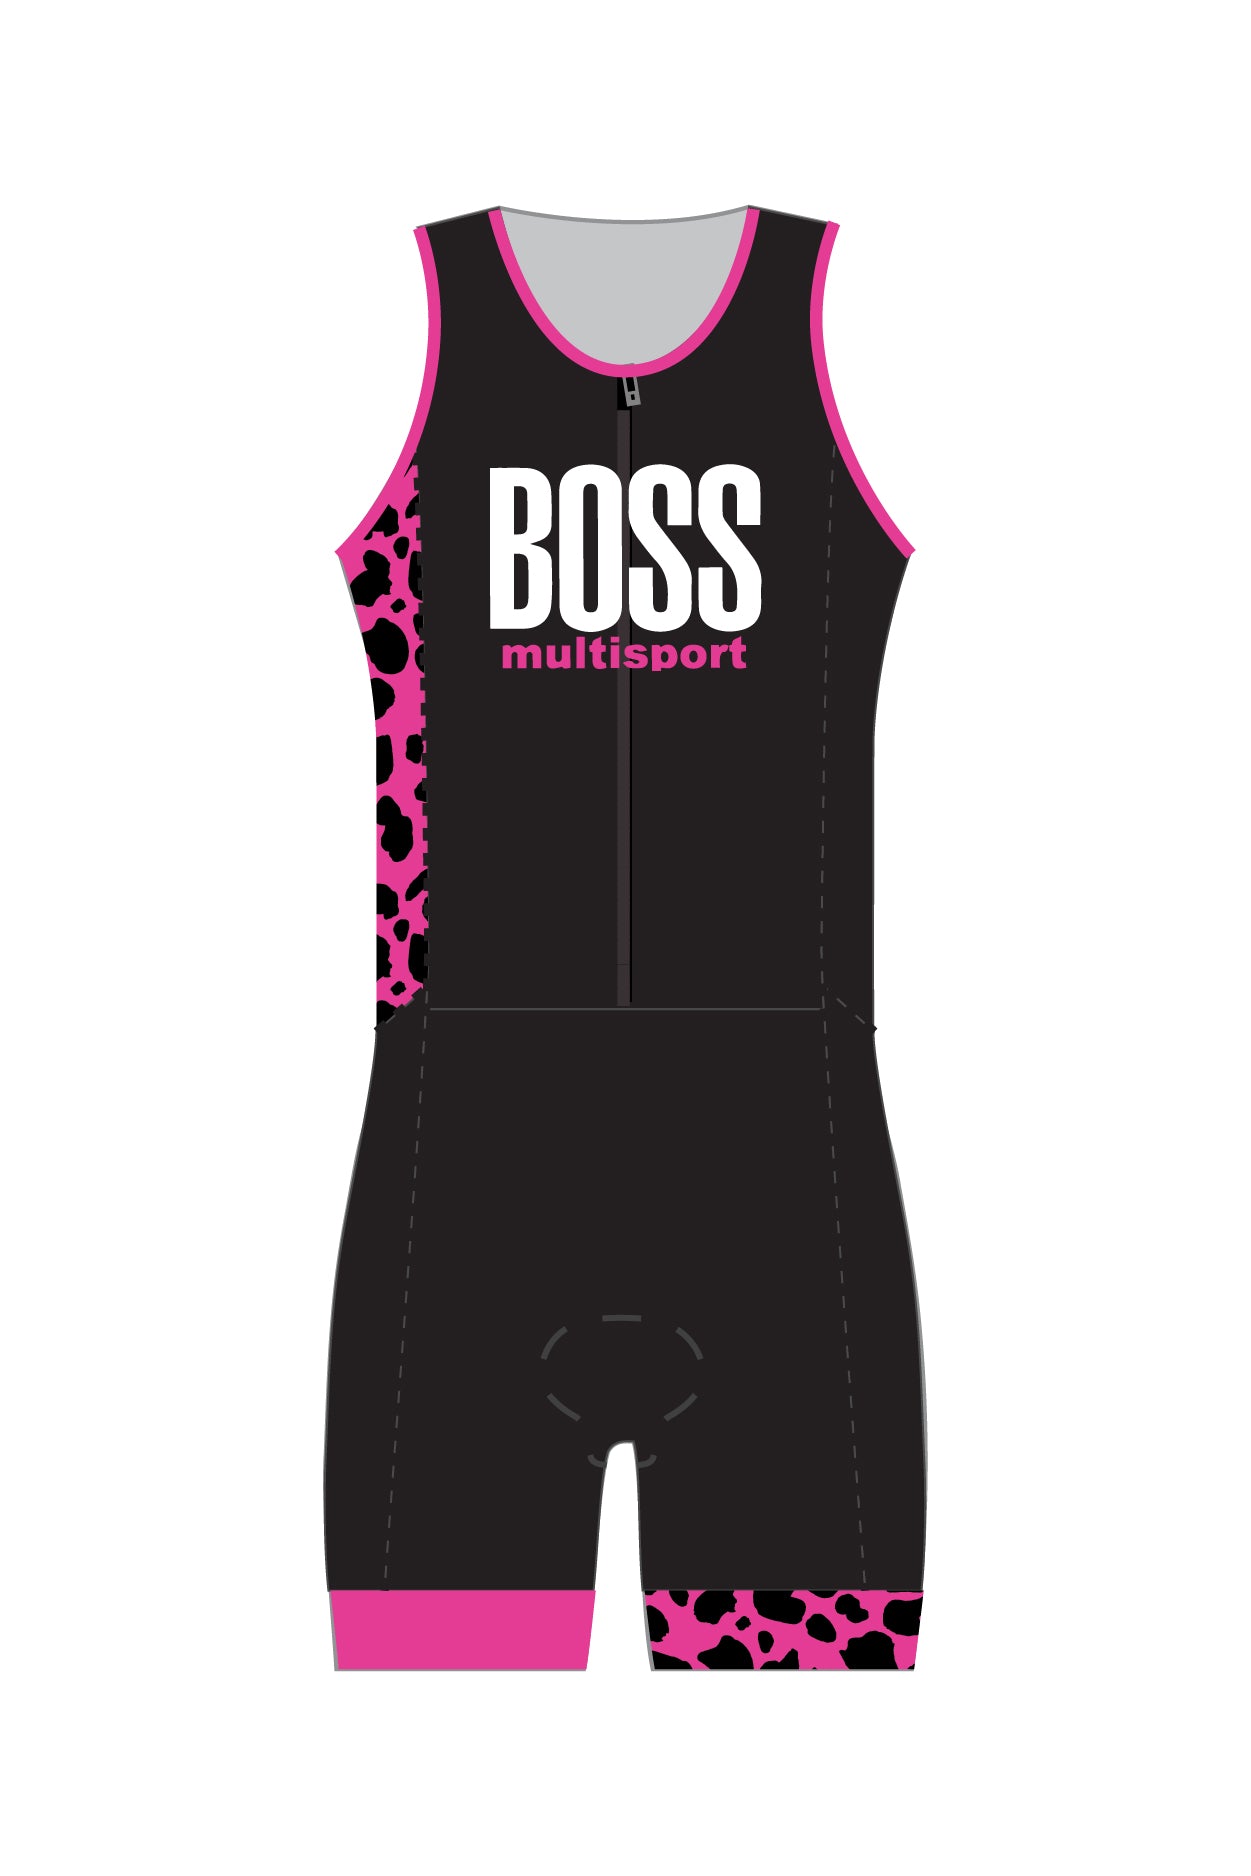 Boss Multisport Men's Zip Tri Suit